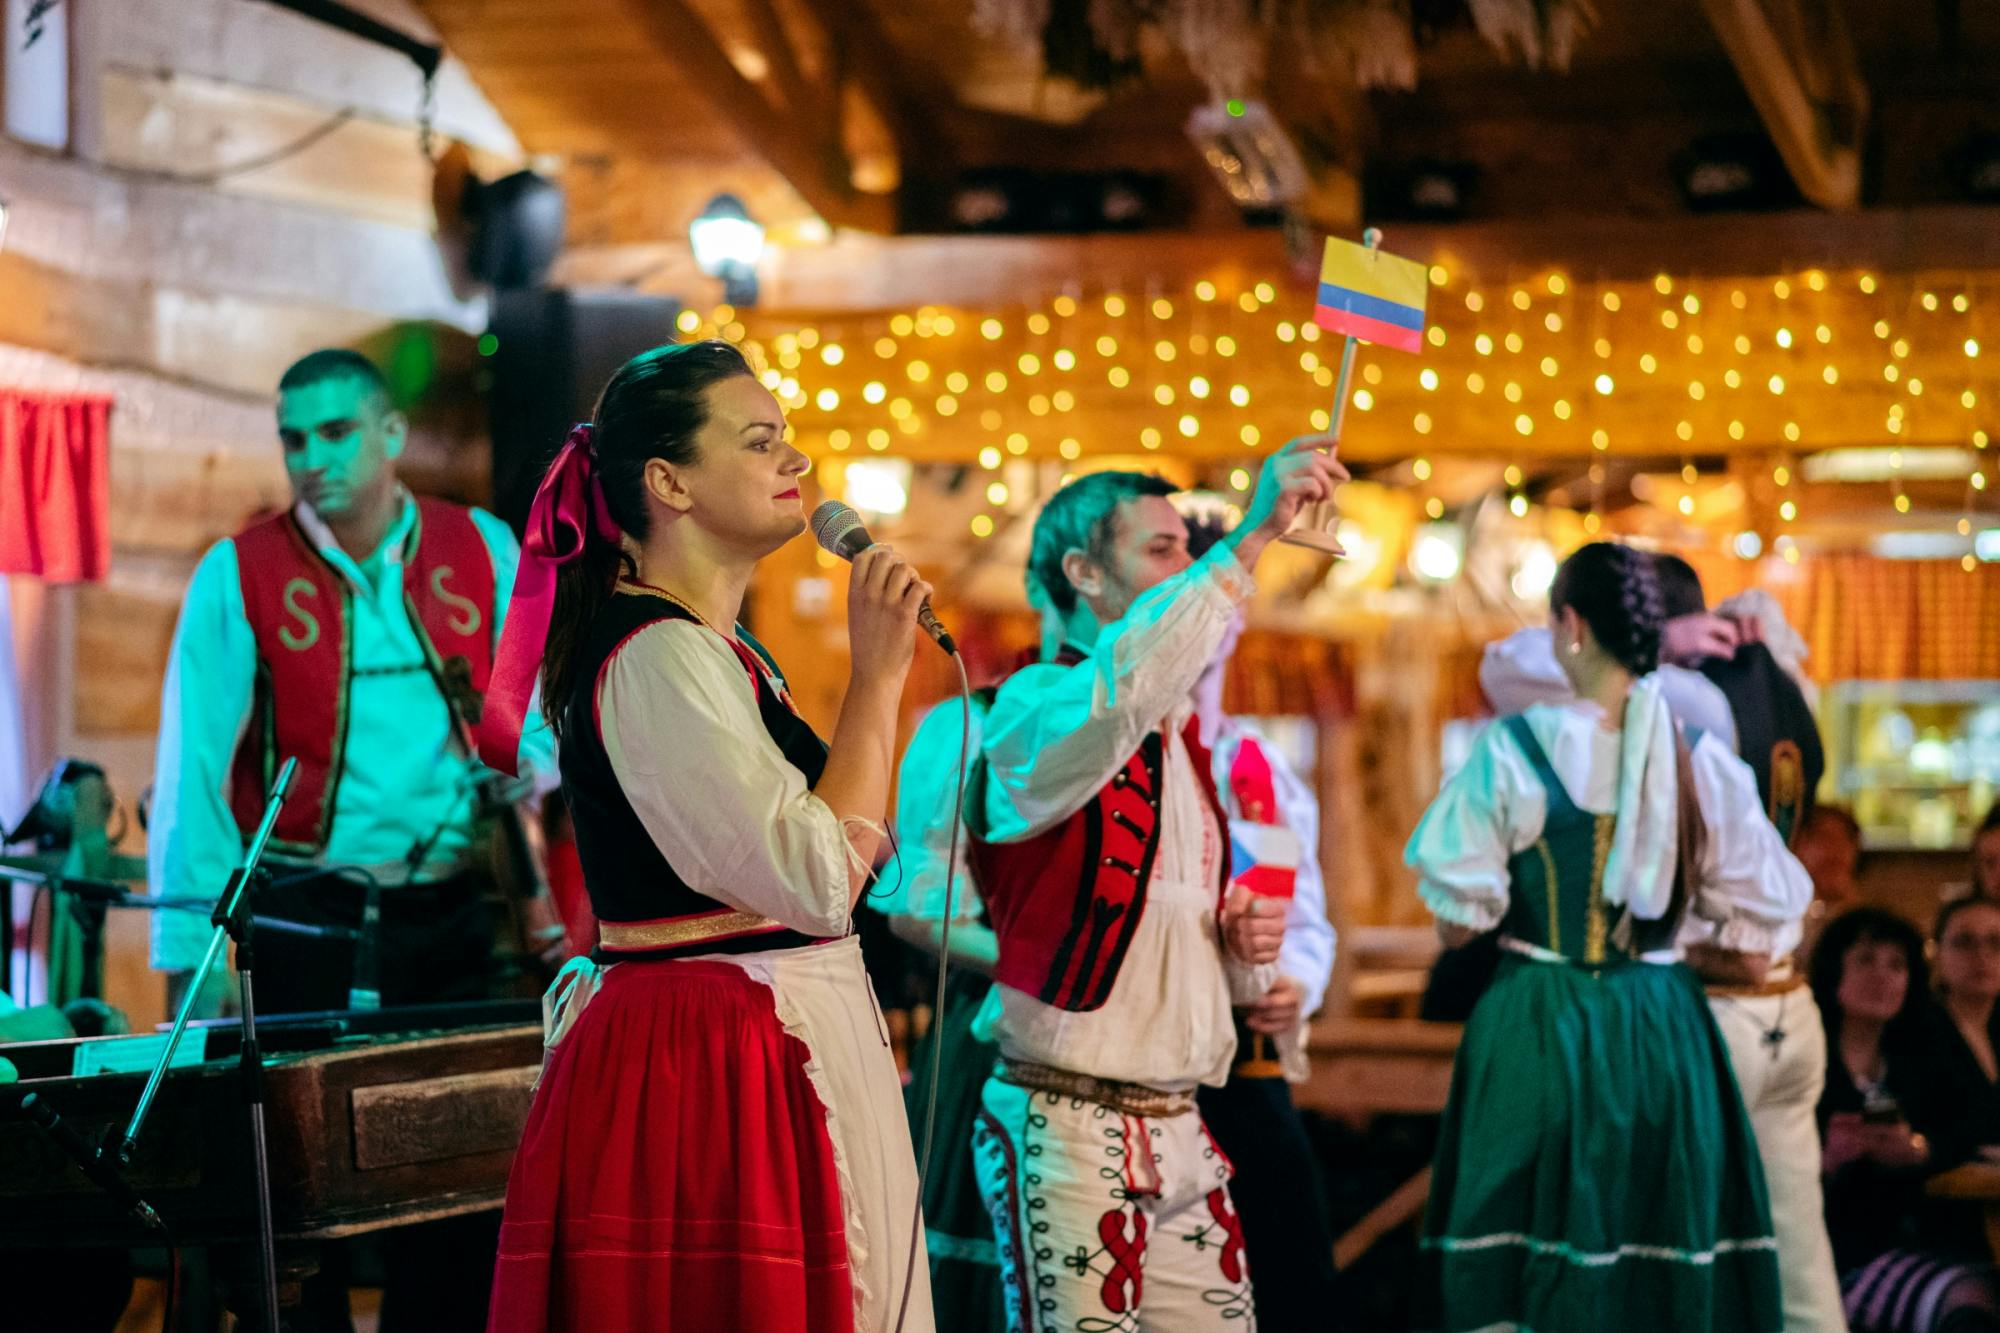 Tschechischer Folkloreabend mit Abendessen und unbegrenzten Getränken in Prag